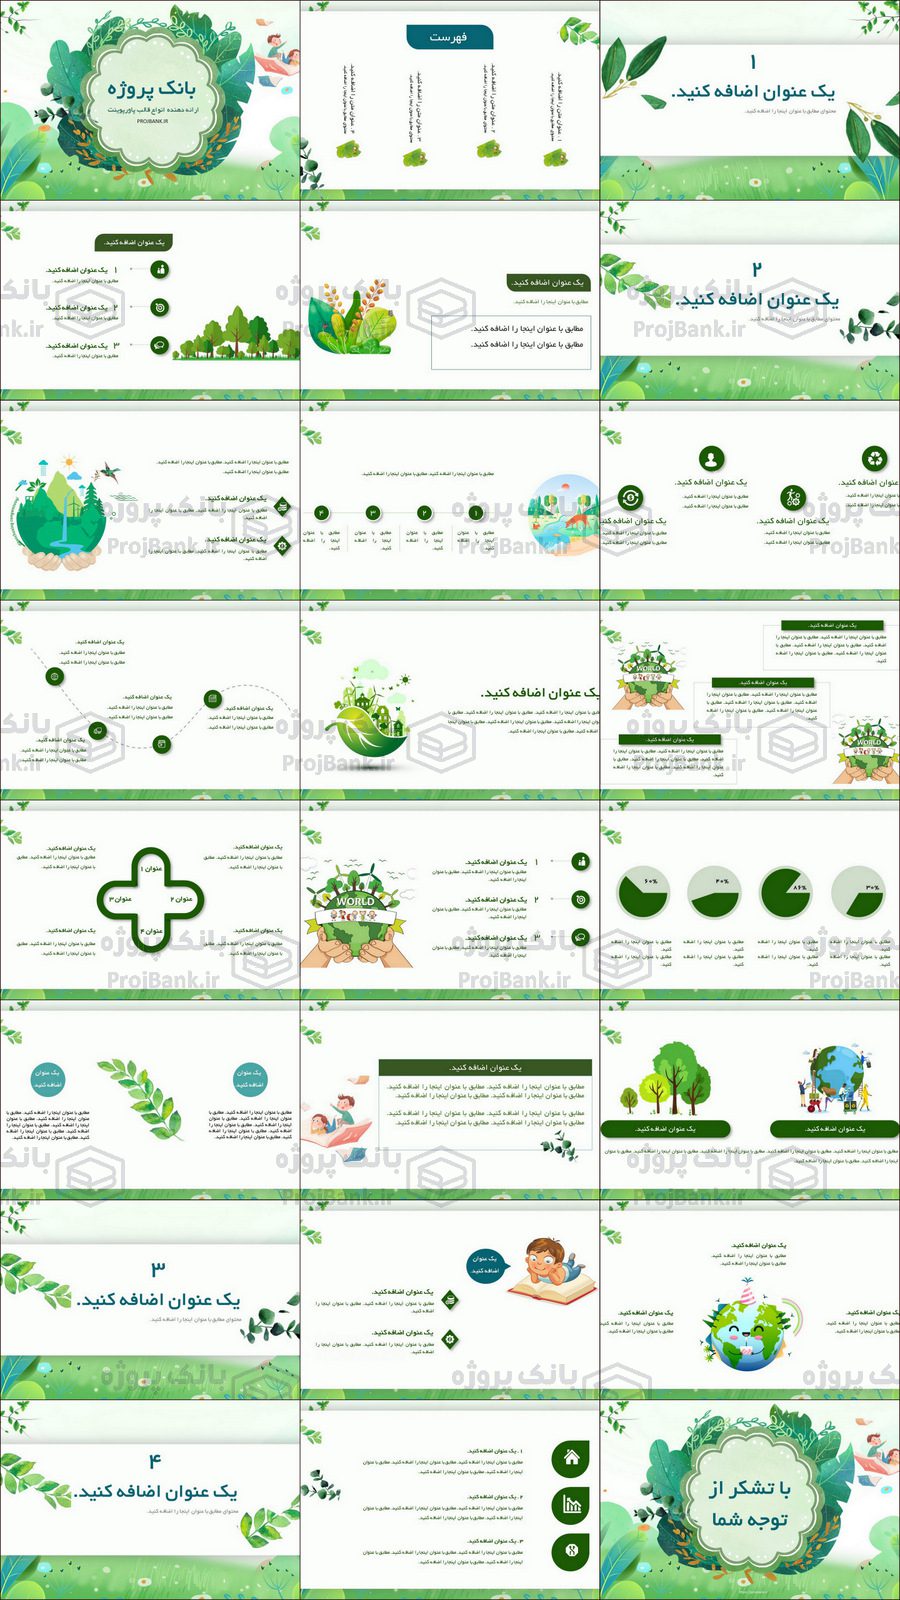 تصویر کلی از تمام اسلاید های قالب پاورپوینت آموزشی با تم سبز